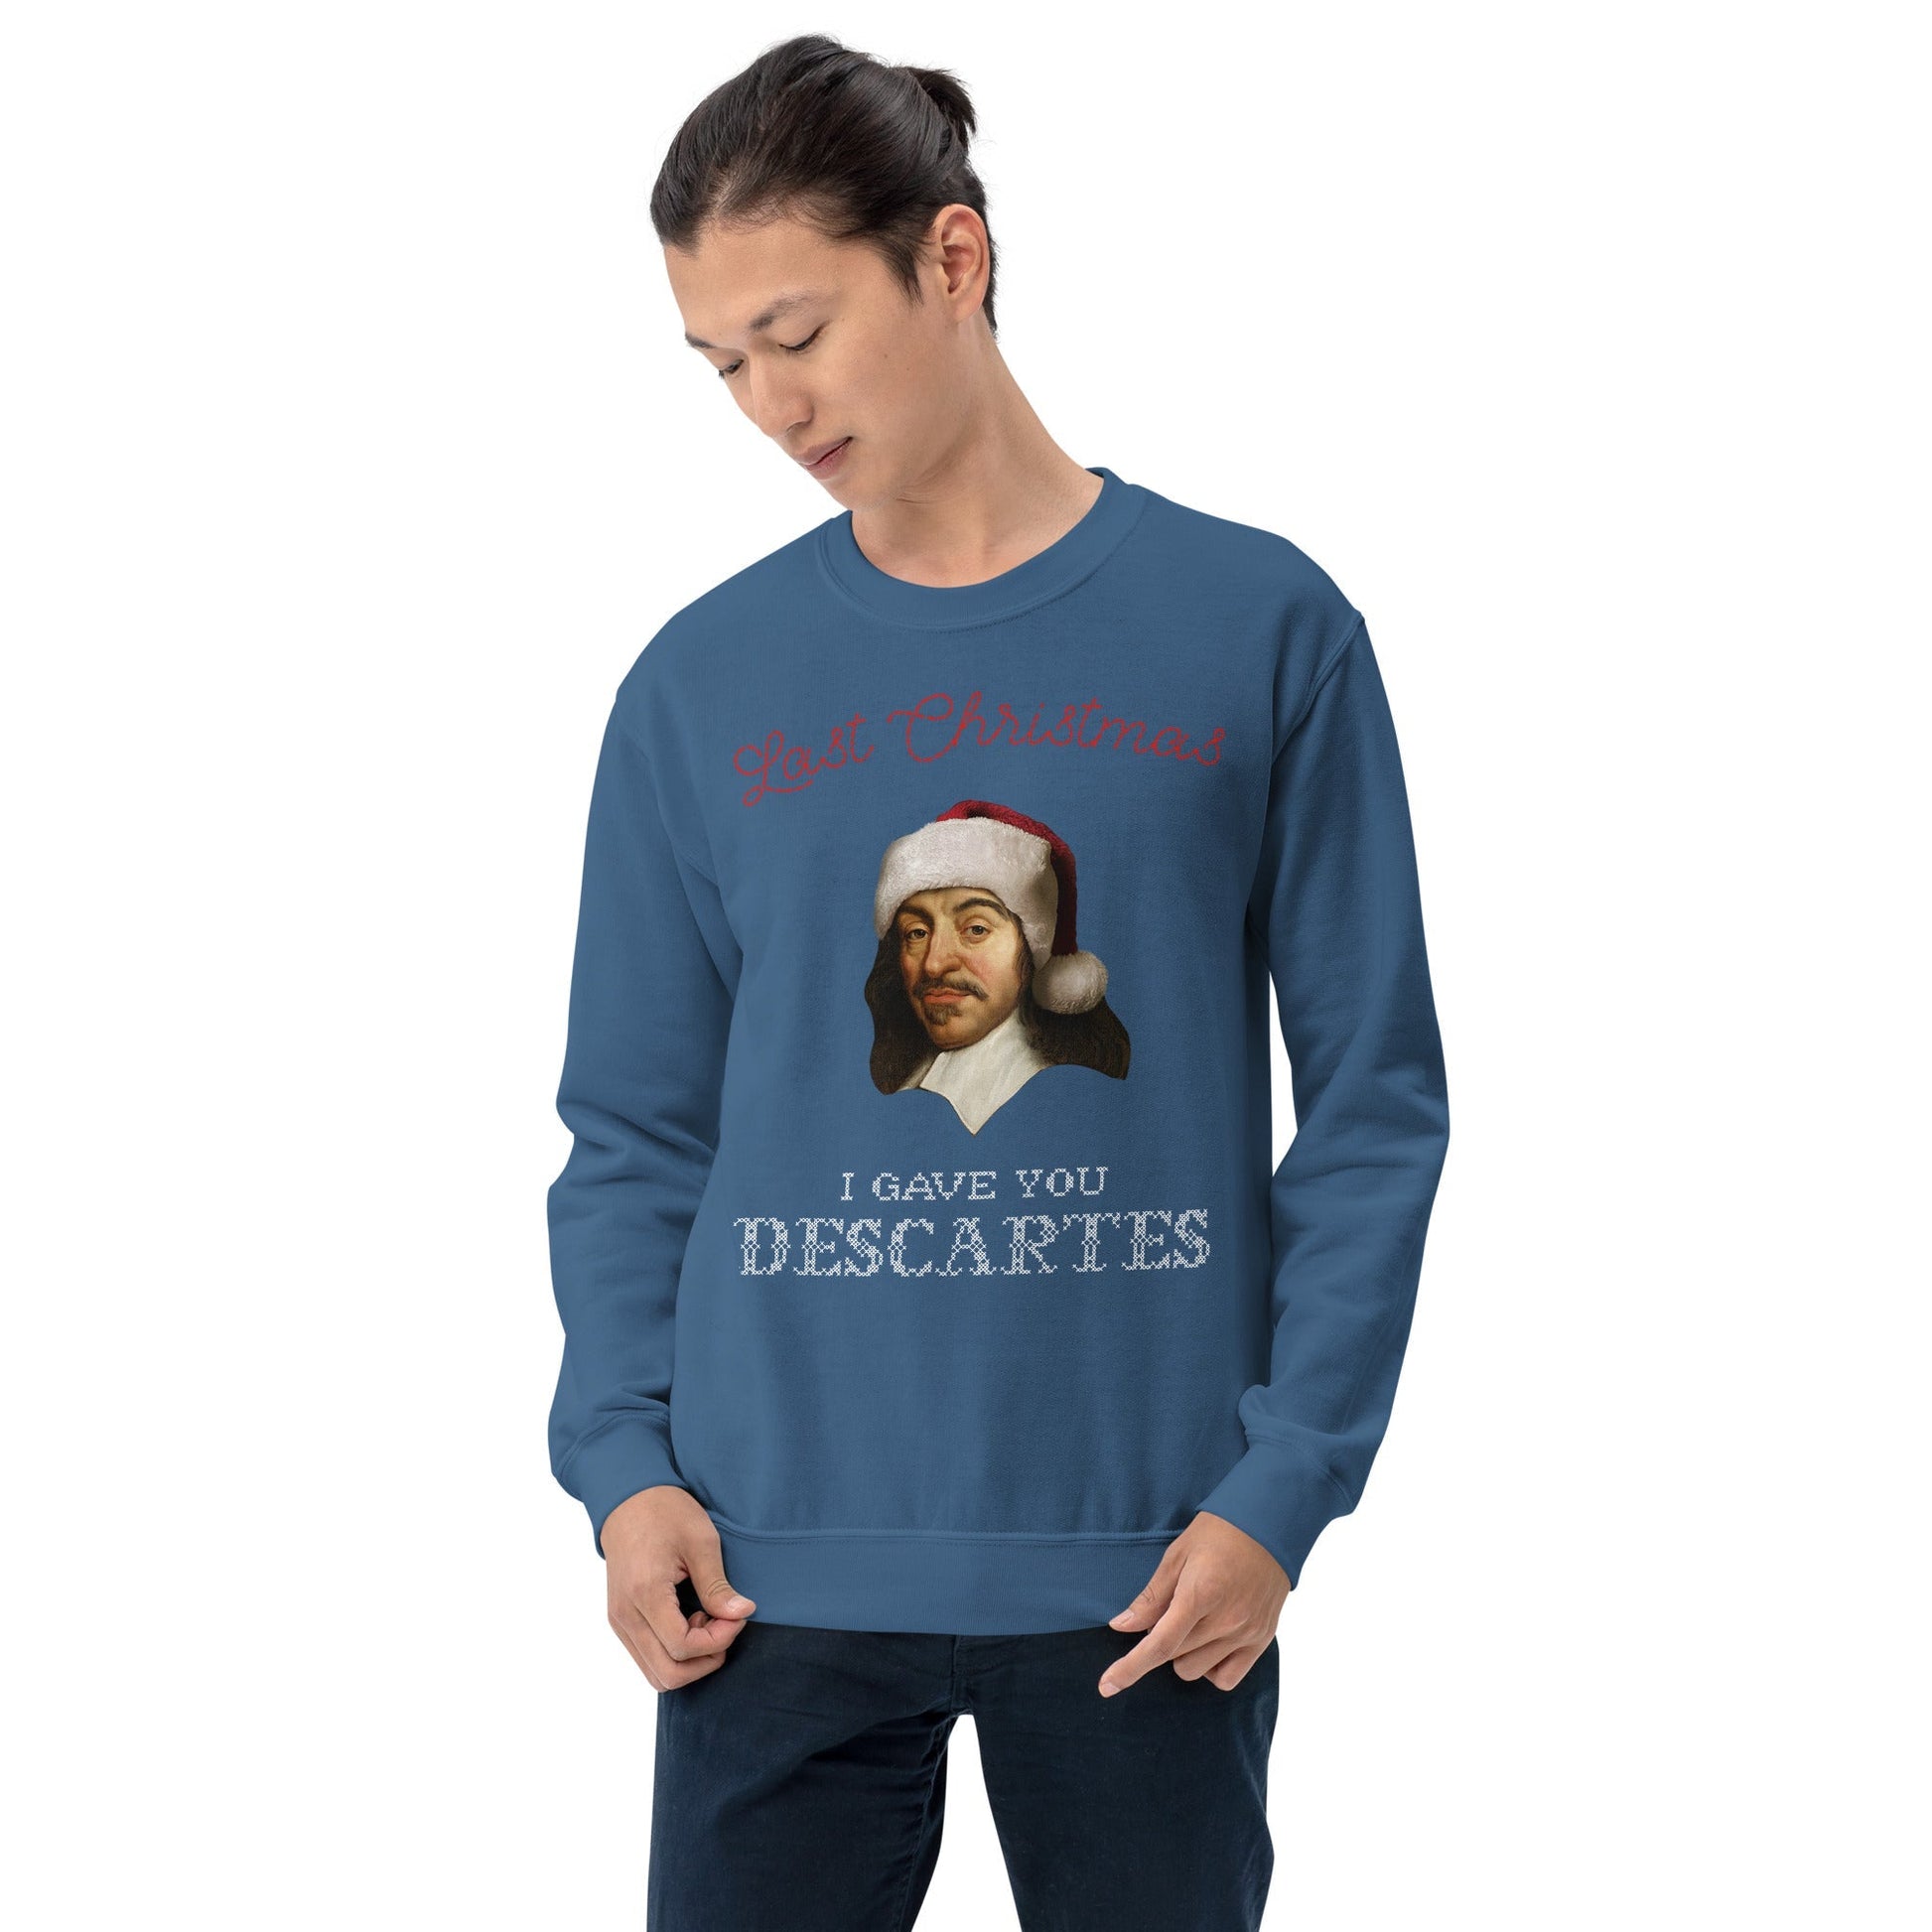 Last Christmas I Gave You Descartes - Sweatshirt